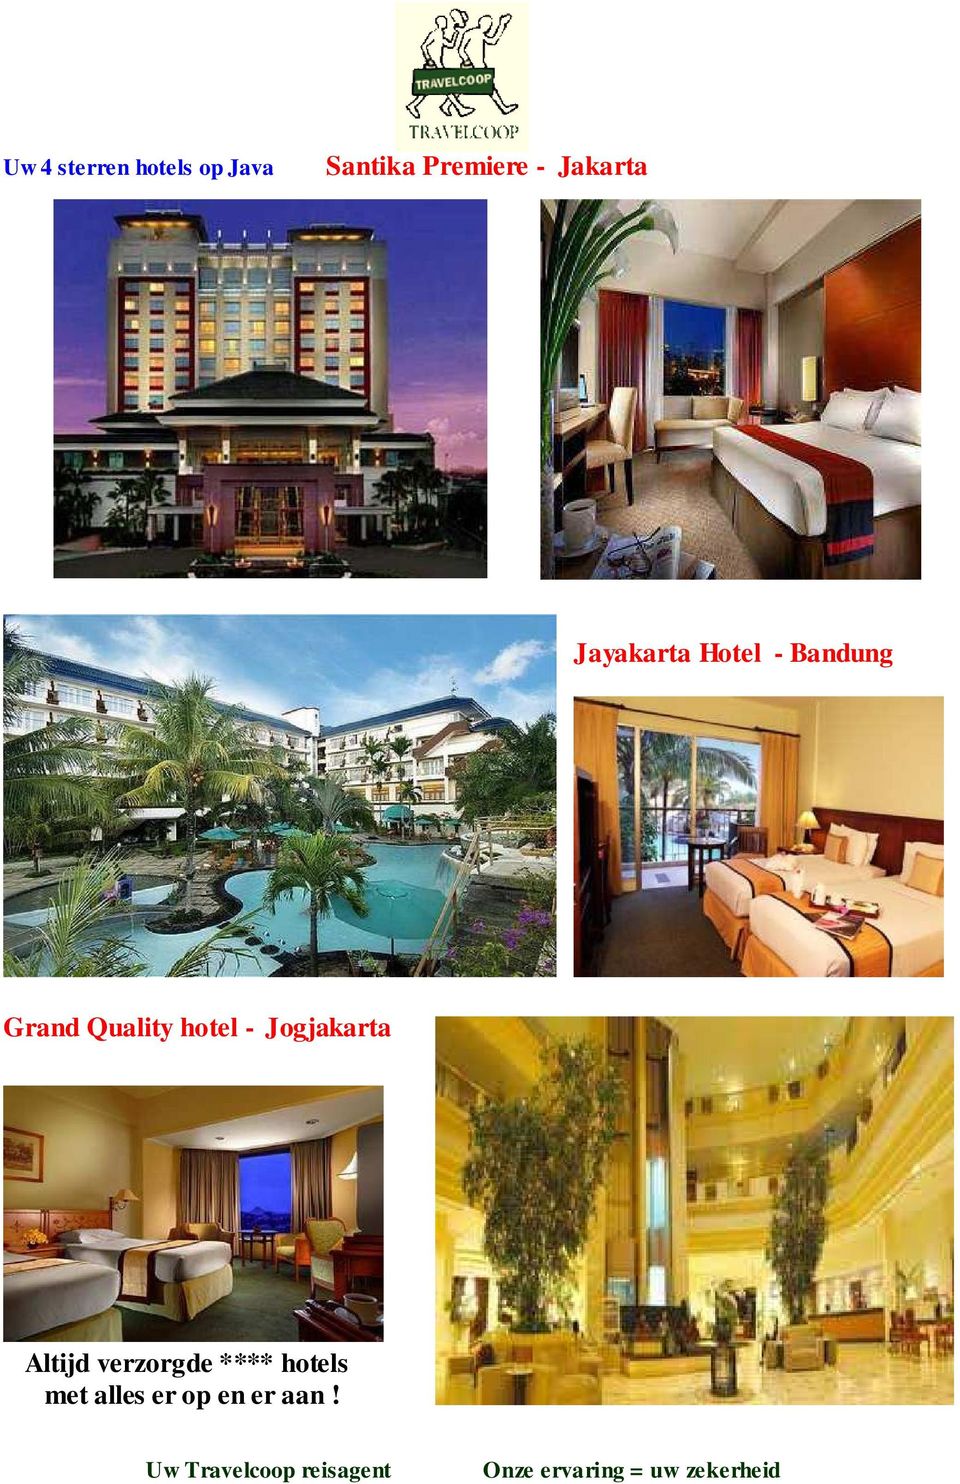 Bandung Grand Quality hotel - Jogjakarta